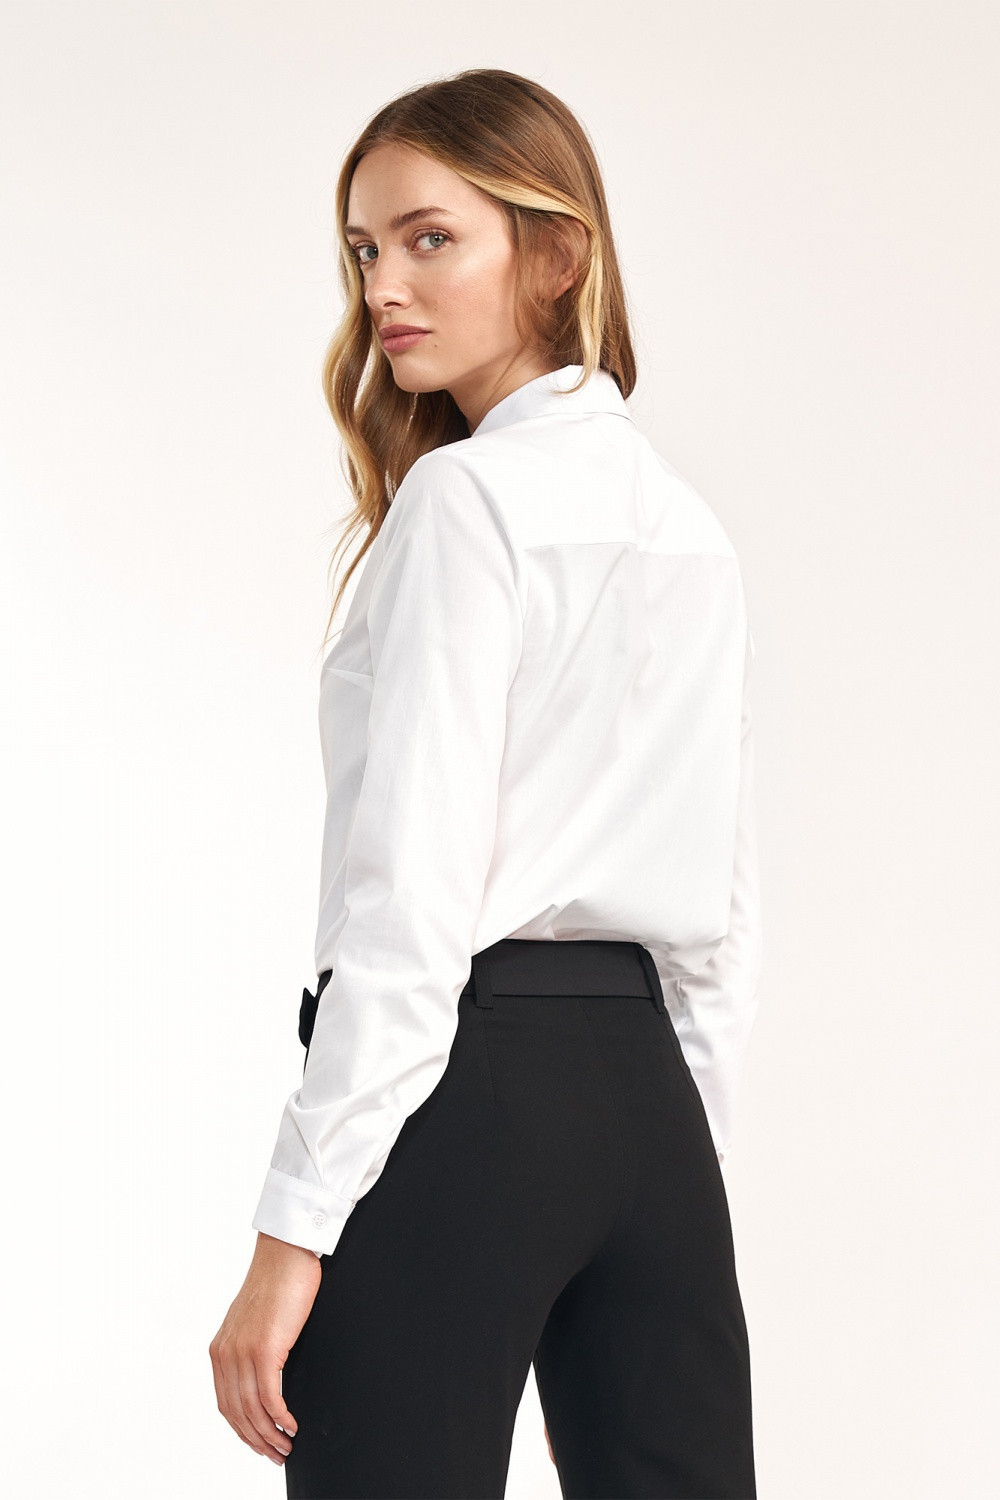 Dámská košile s dlouhým rukávem model 18523056 bílá - Nife Velikost: 40, Barvy: bílá